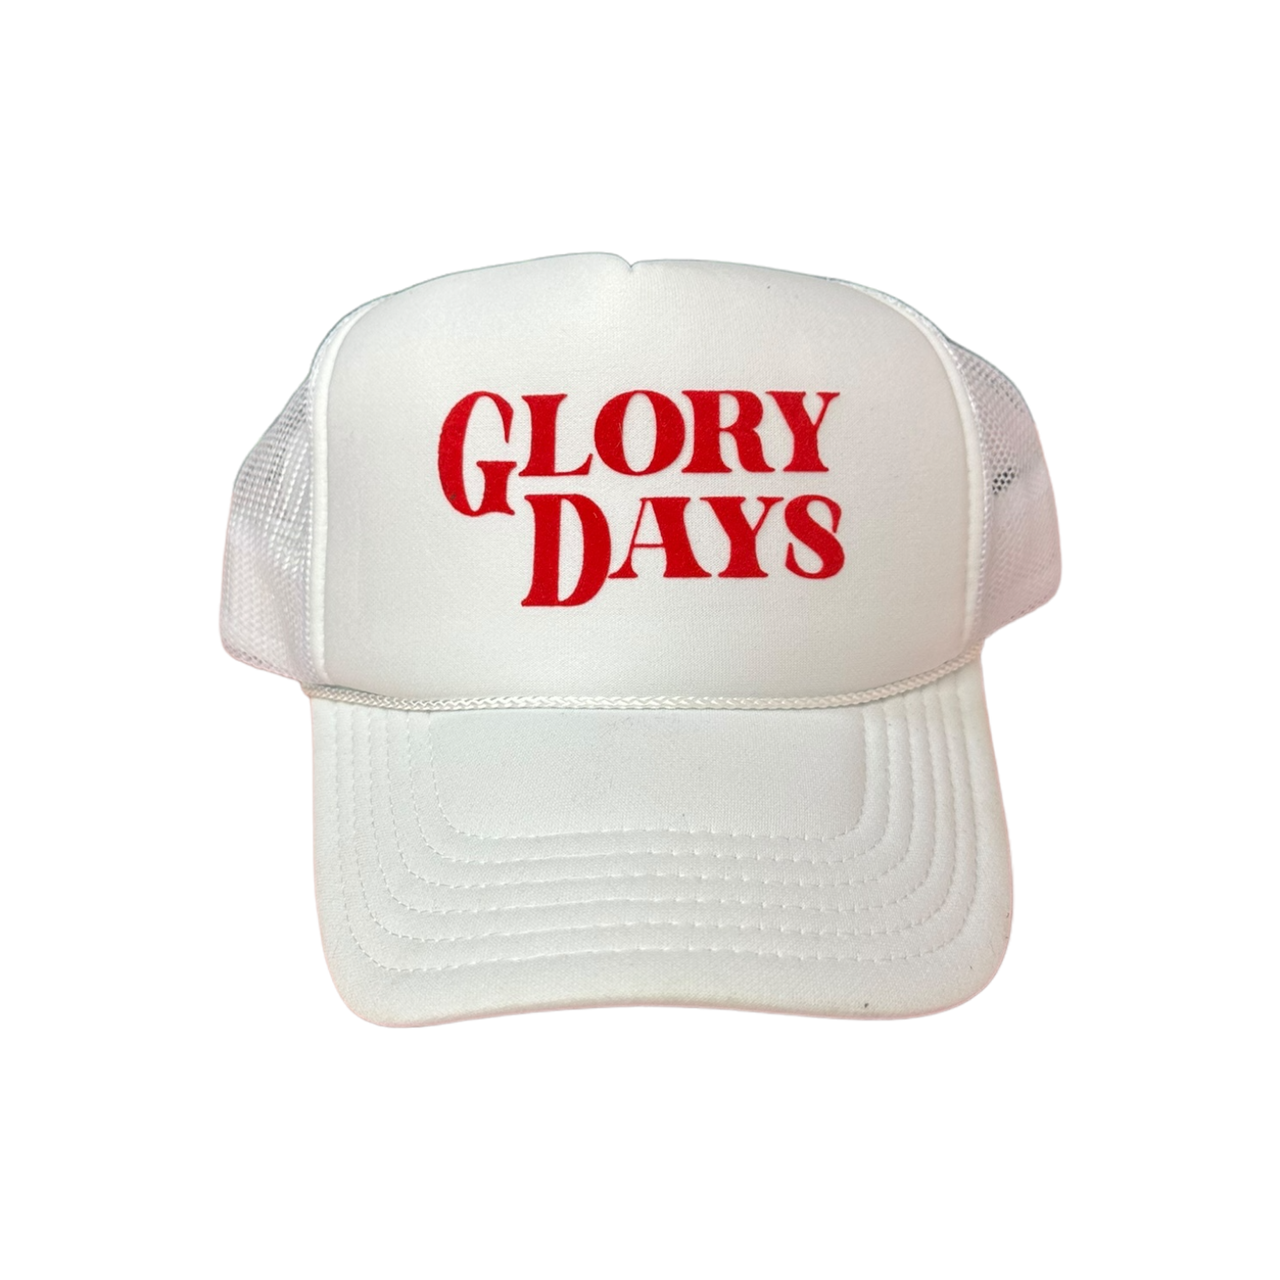 Glory Days - White Trucker